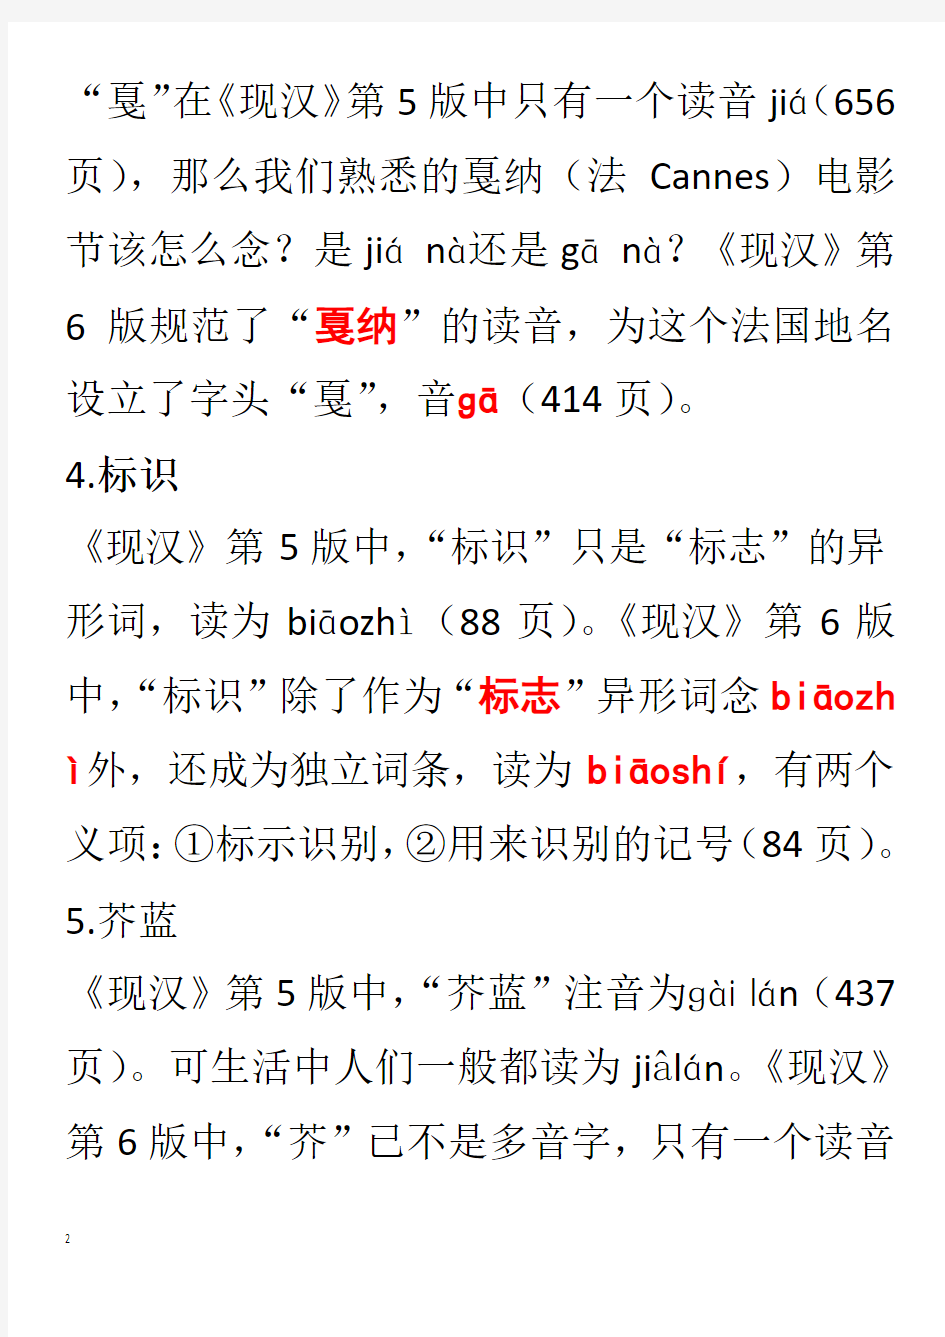 现代汉语词典第六版注音、字形、词义新变化